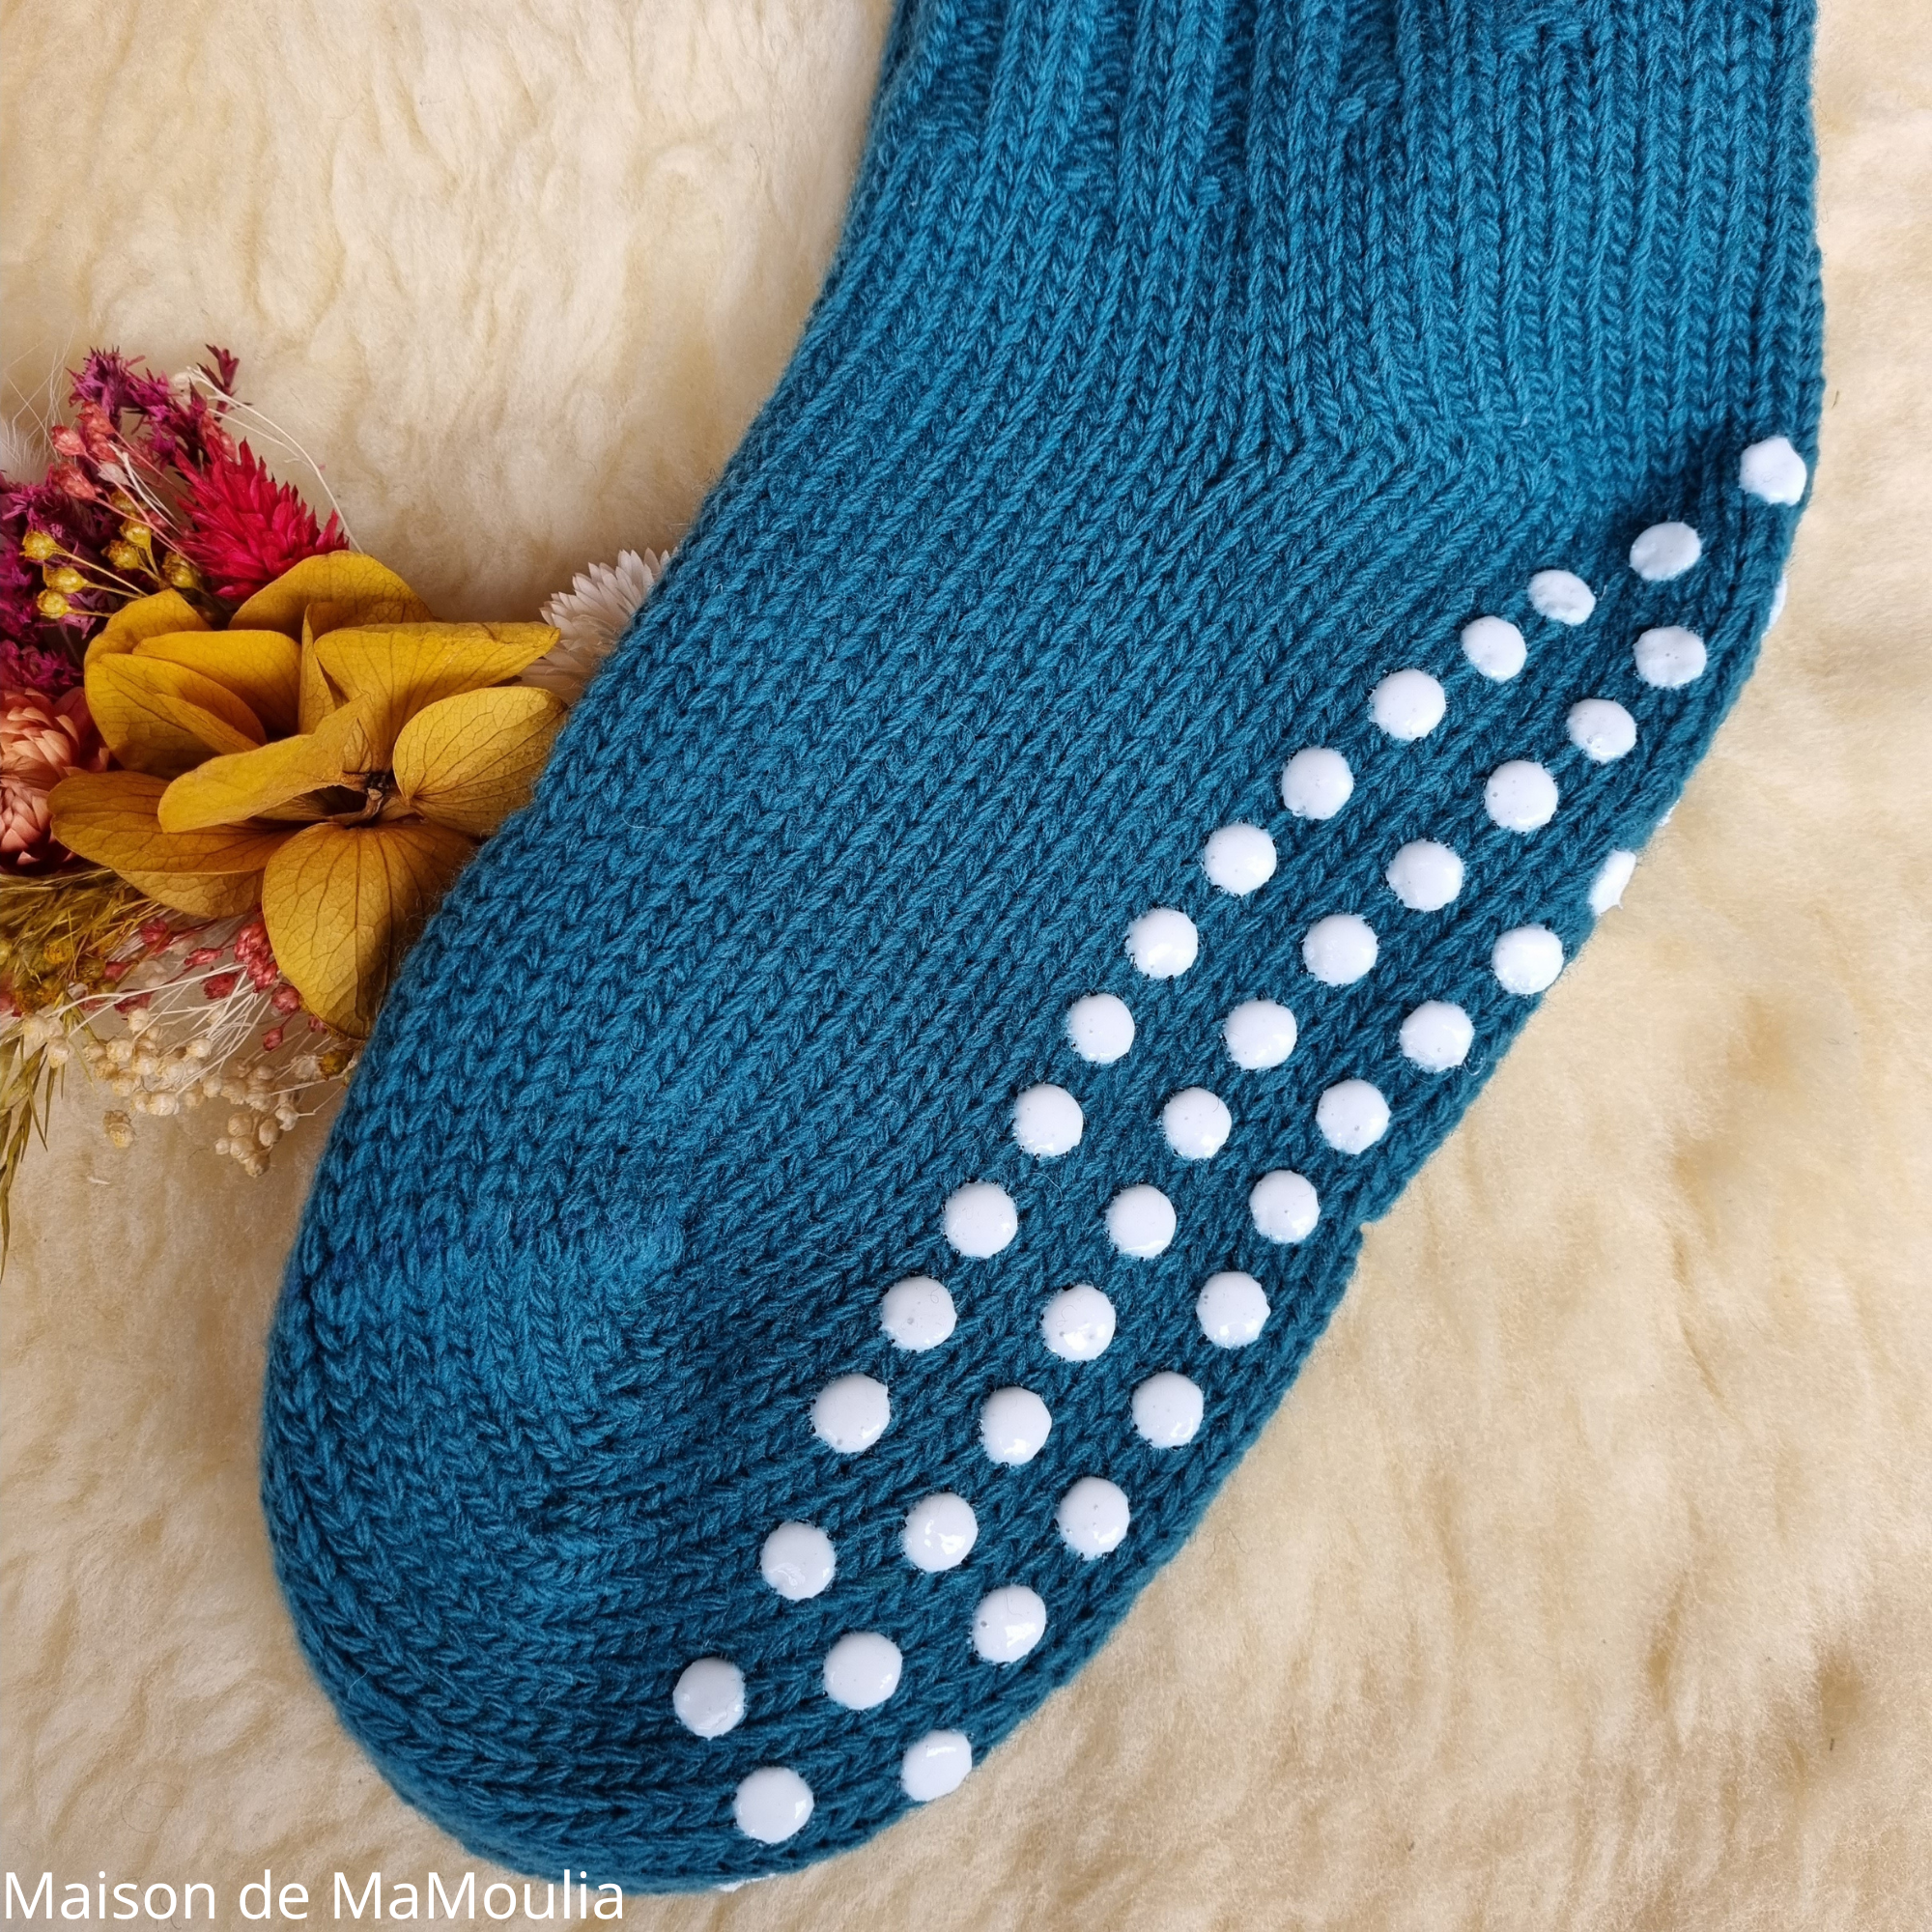 091-chaussettes-antiderapantes-adulte-pure-laine-bio-ecologique-hirsch-natur-maison-de-mamoulia-bleu-petrole- turquoise